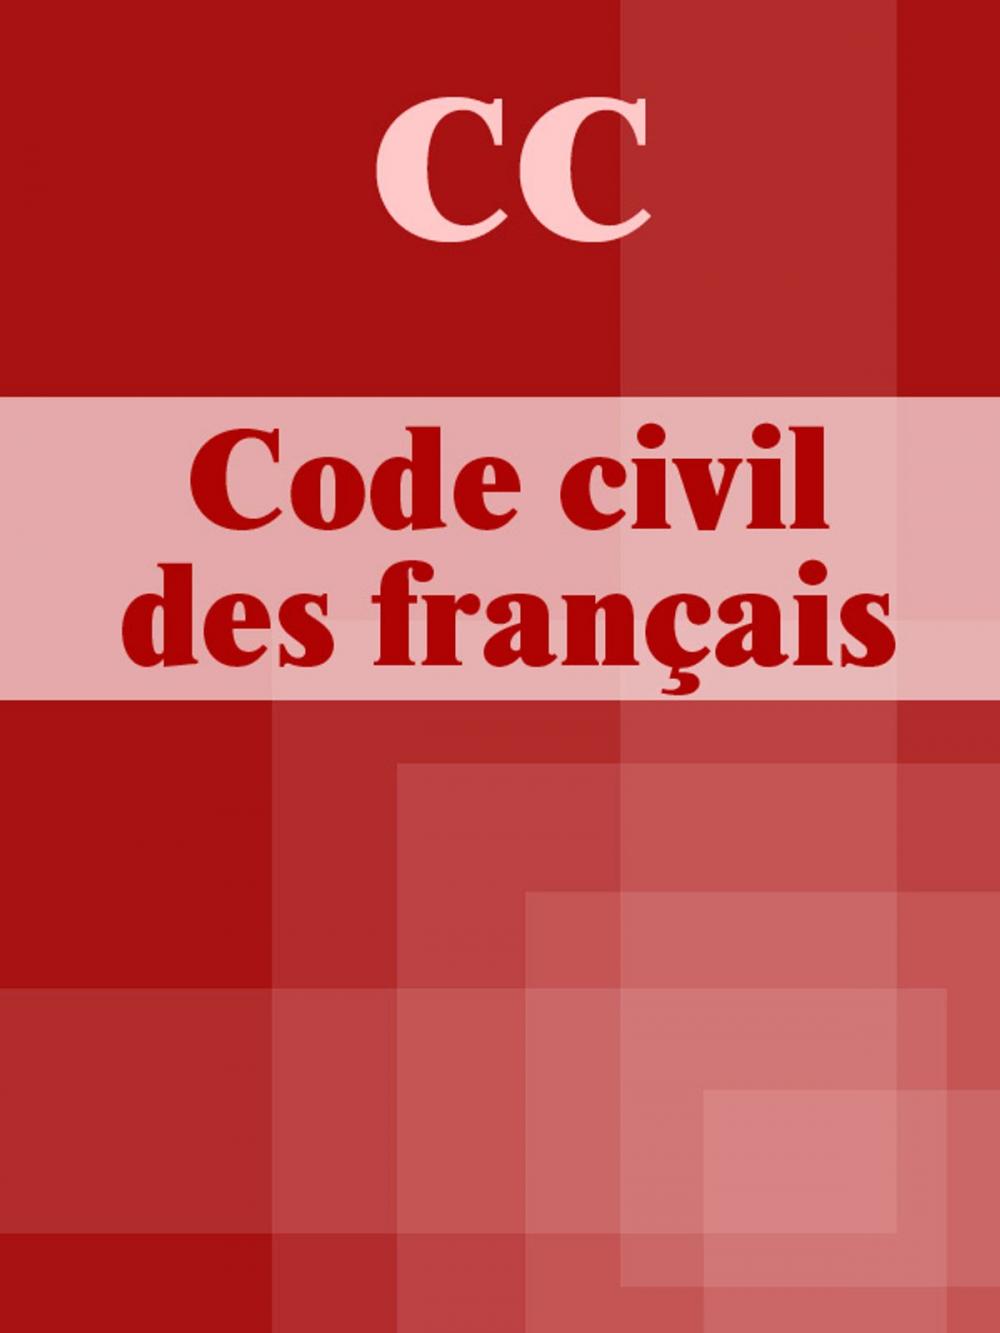 Big bigCover of CC Code civil des français